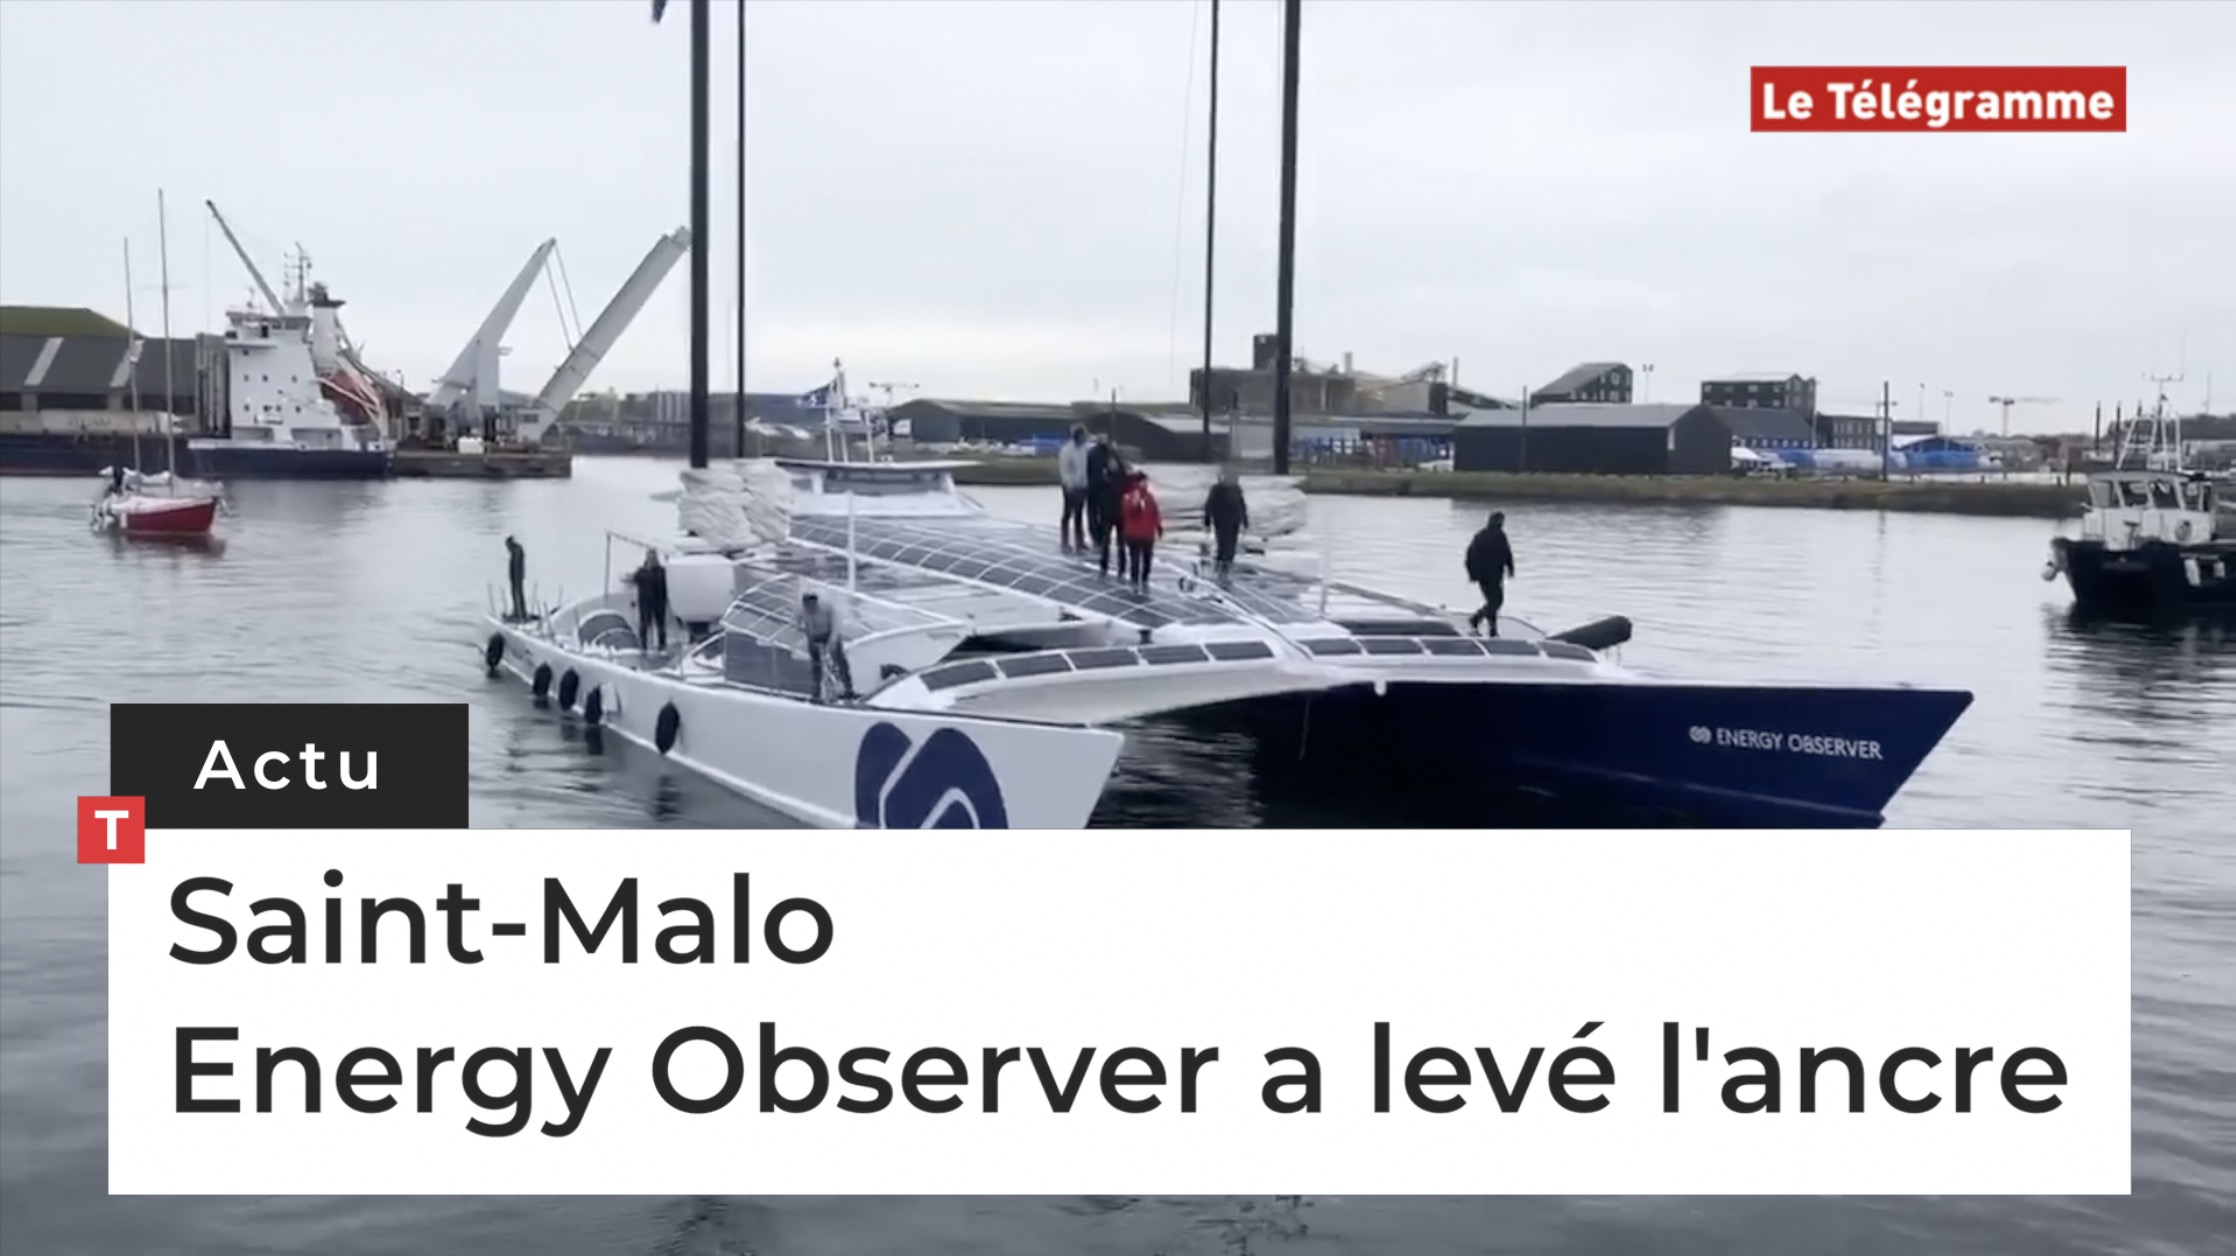 Saint-Malo. Energy Observer a levé l'ancre (Le Télégramme)